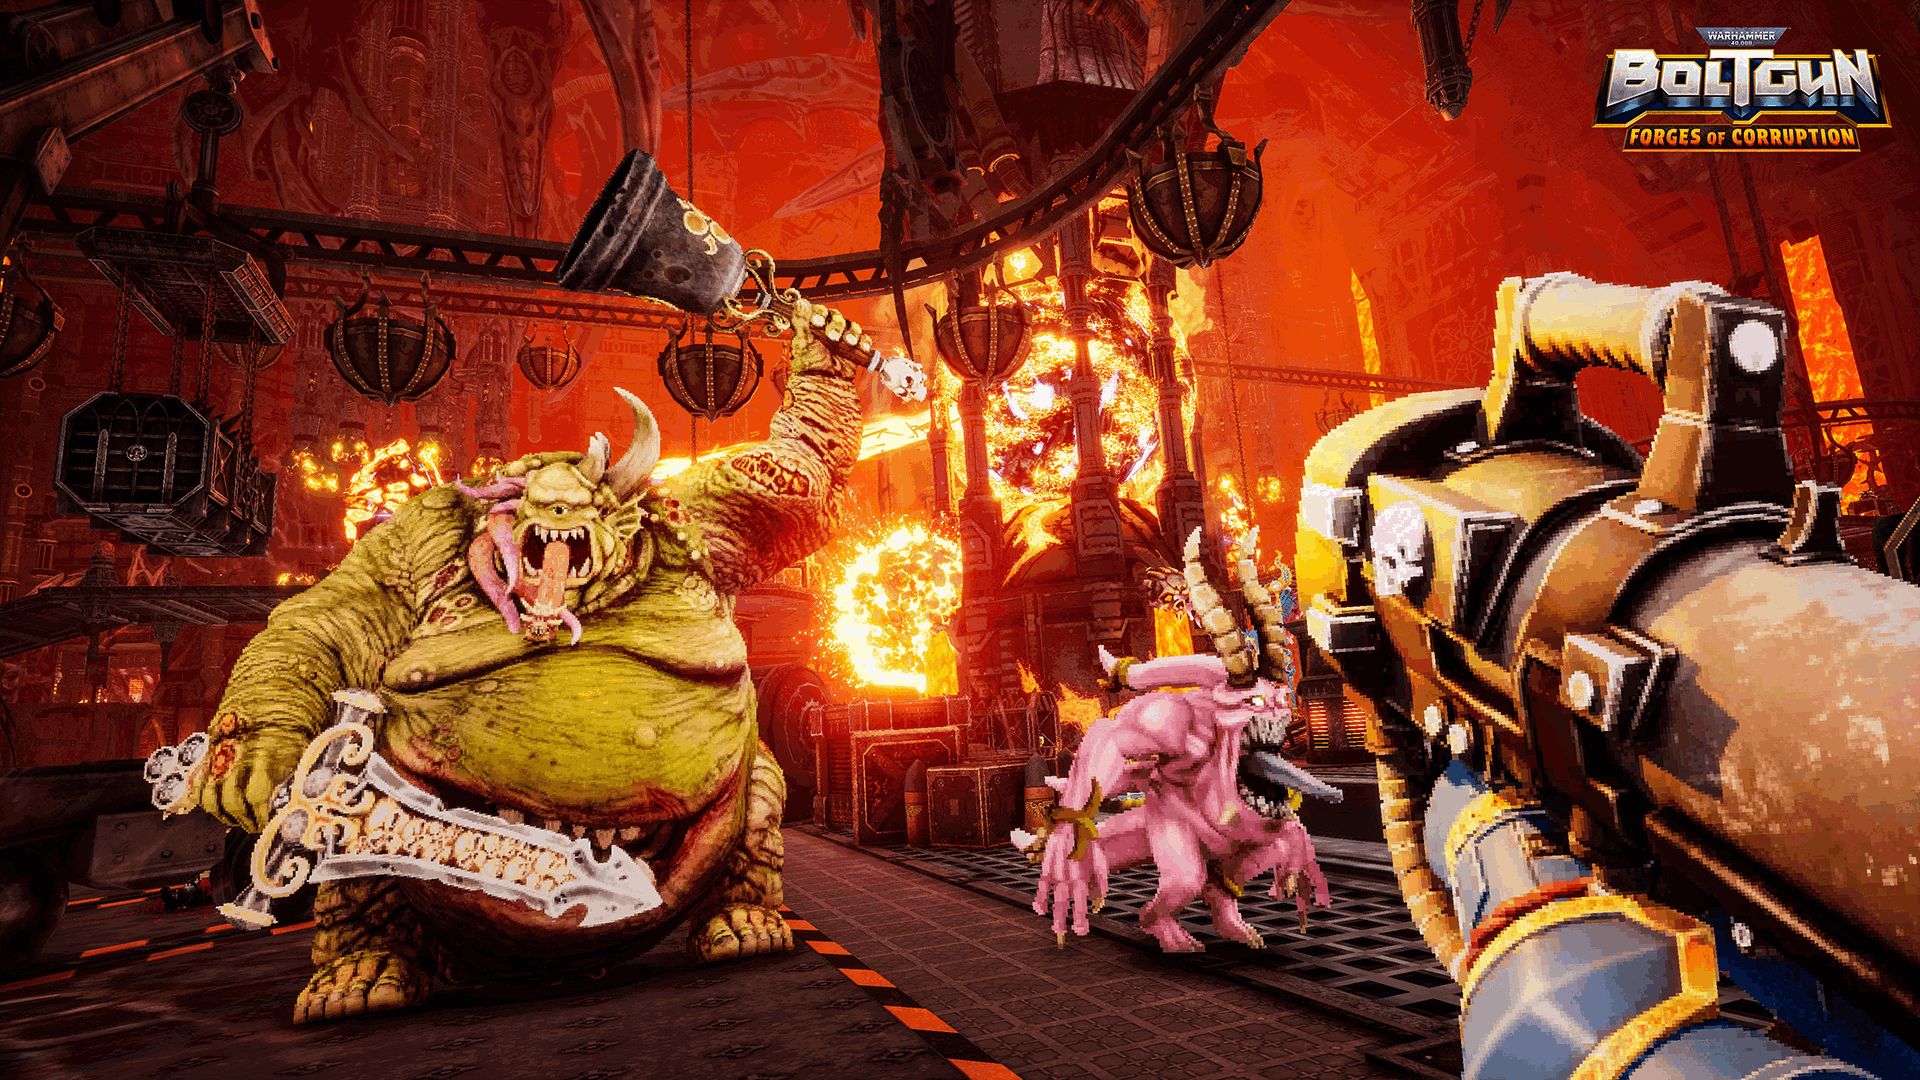 Warhammer 40,000: Boltgun annuncia Forges of Corruption, un nuovo sanguinoso DLC